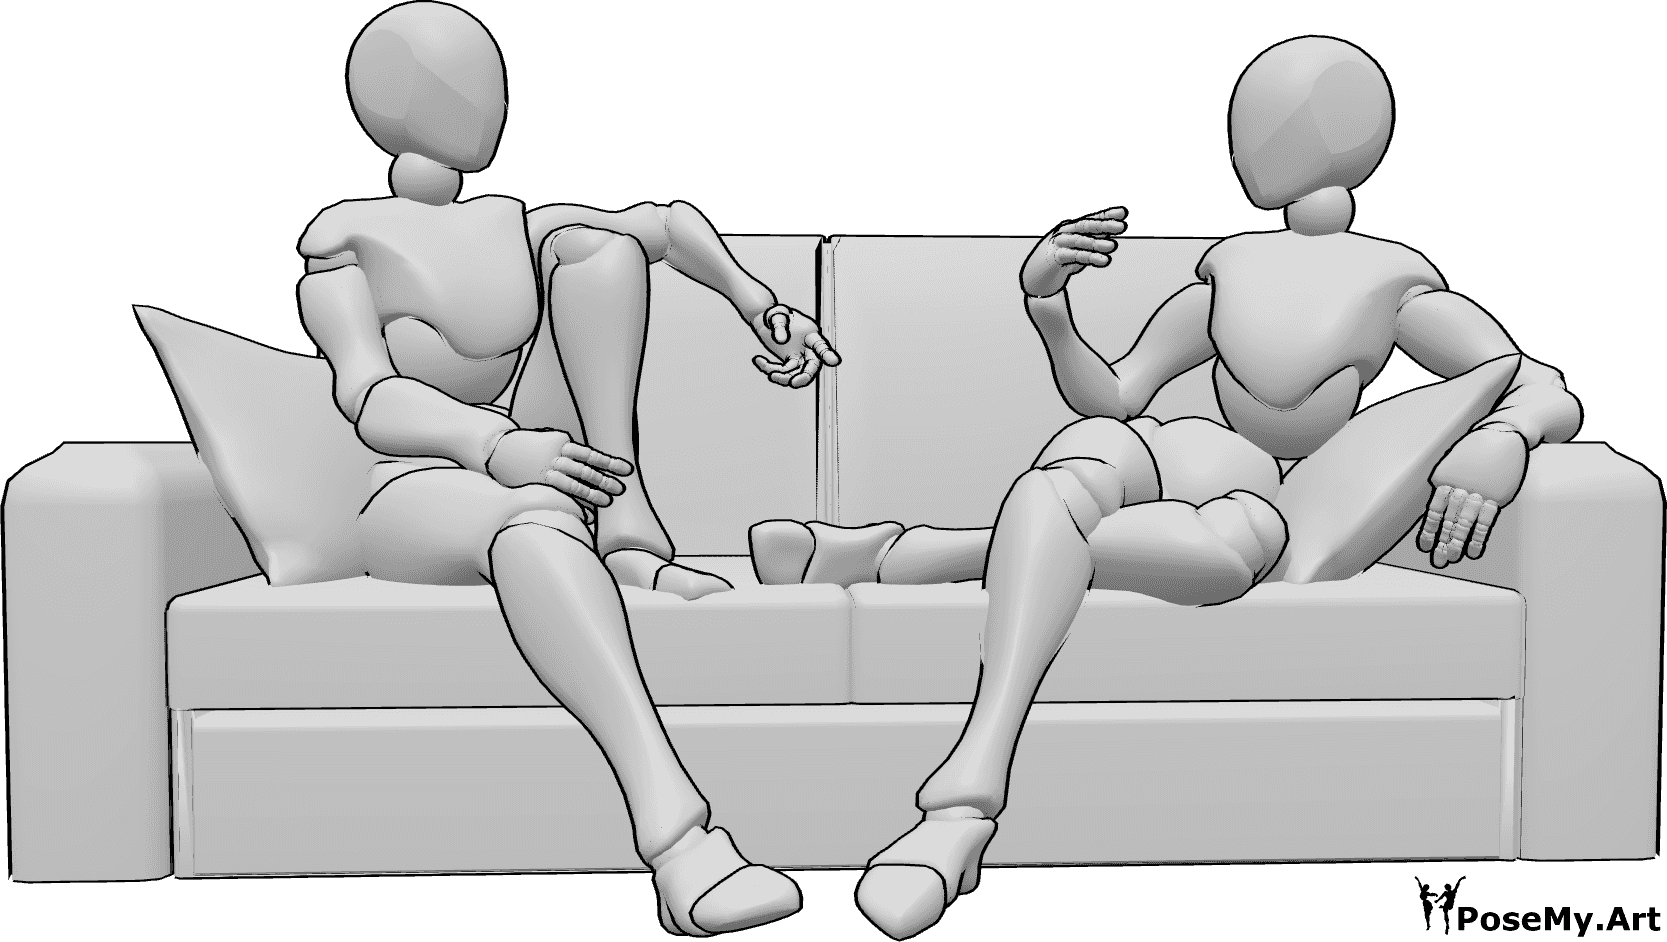 Référence des poses- Deux femmes assises posent - Deux femmes sont confortablement assises sur le canapé et discutent.